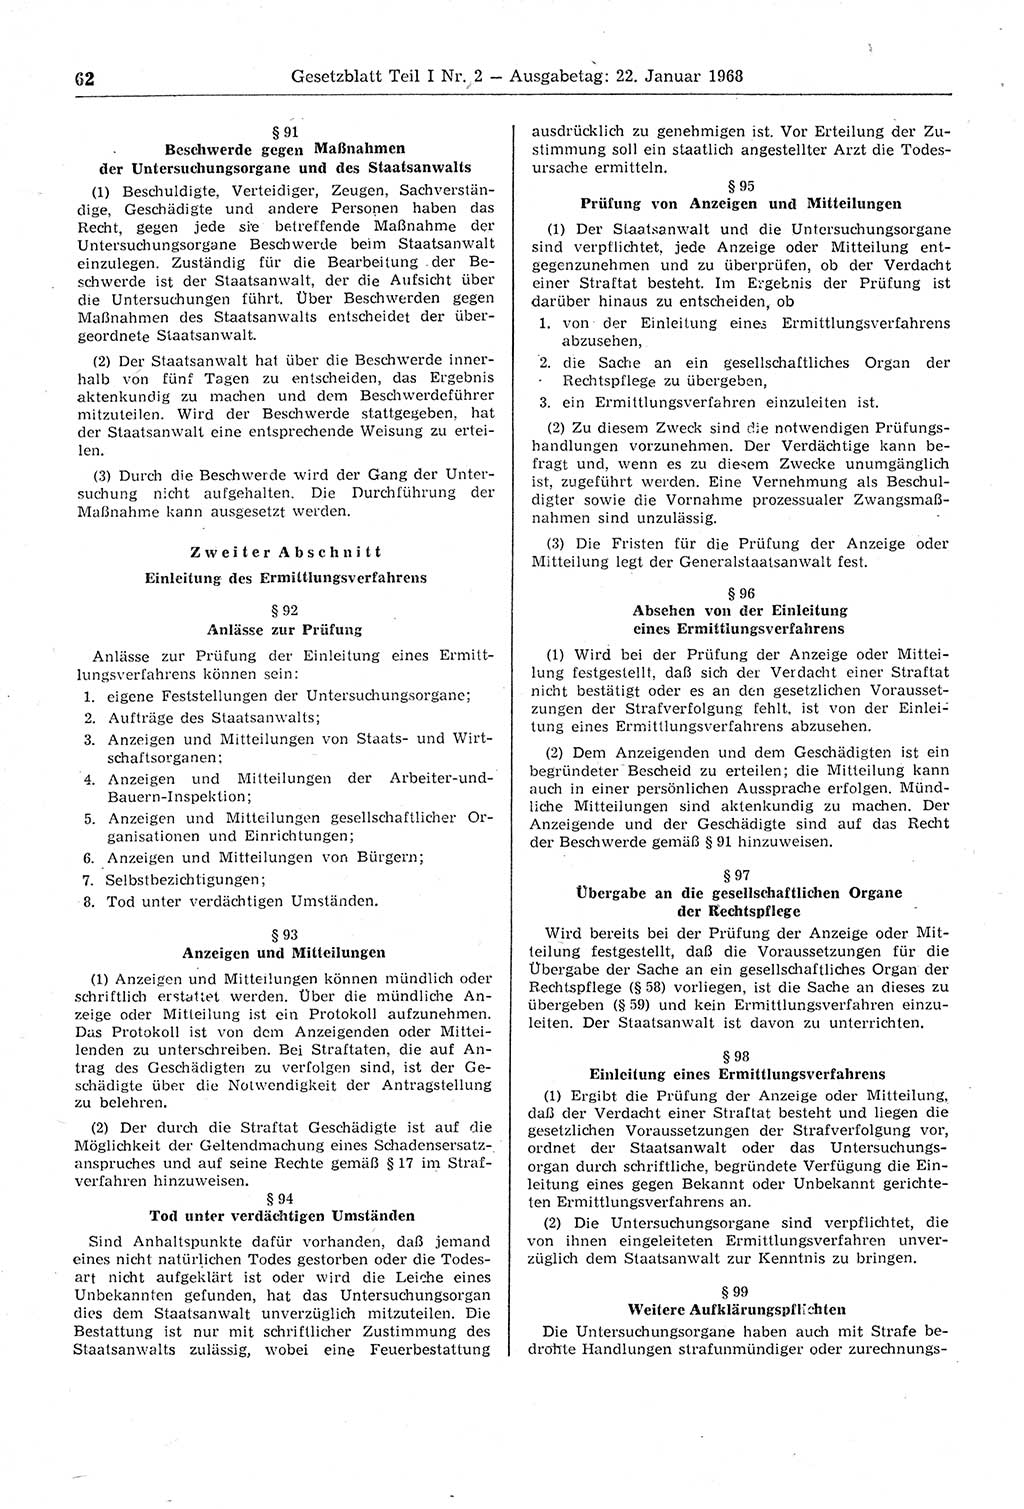 Gesetzblatt (GBl.) der Deutschen Demokratischen Republik (DDR) Teil Ⅰ 1968, Seite 62 (GBl. DDR Ⅰ 1968, S. 62)